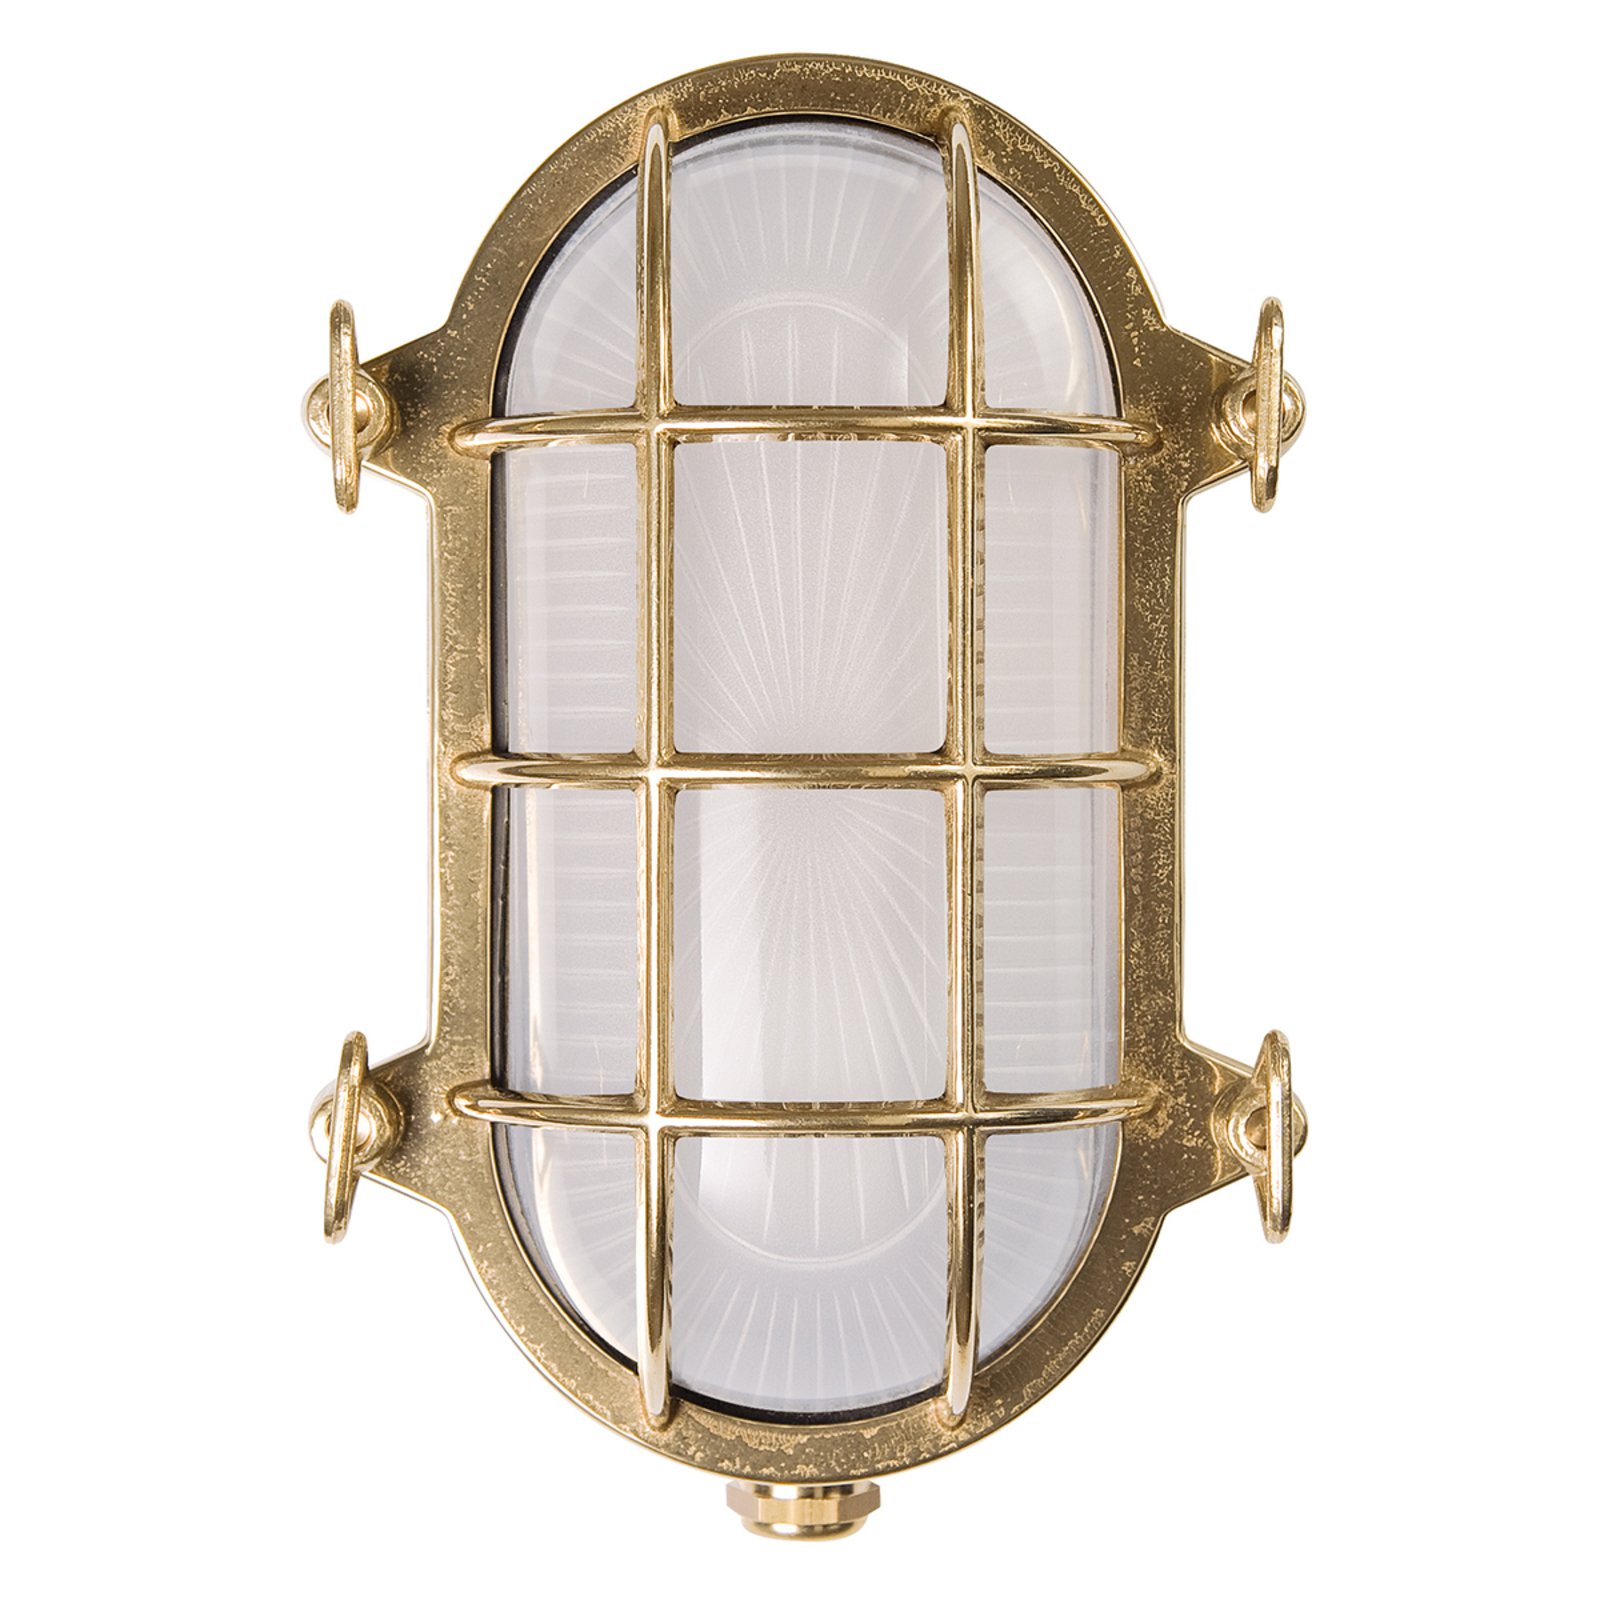 Oval bulkhead wall light Hook, brass, opal